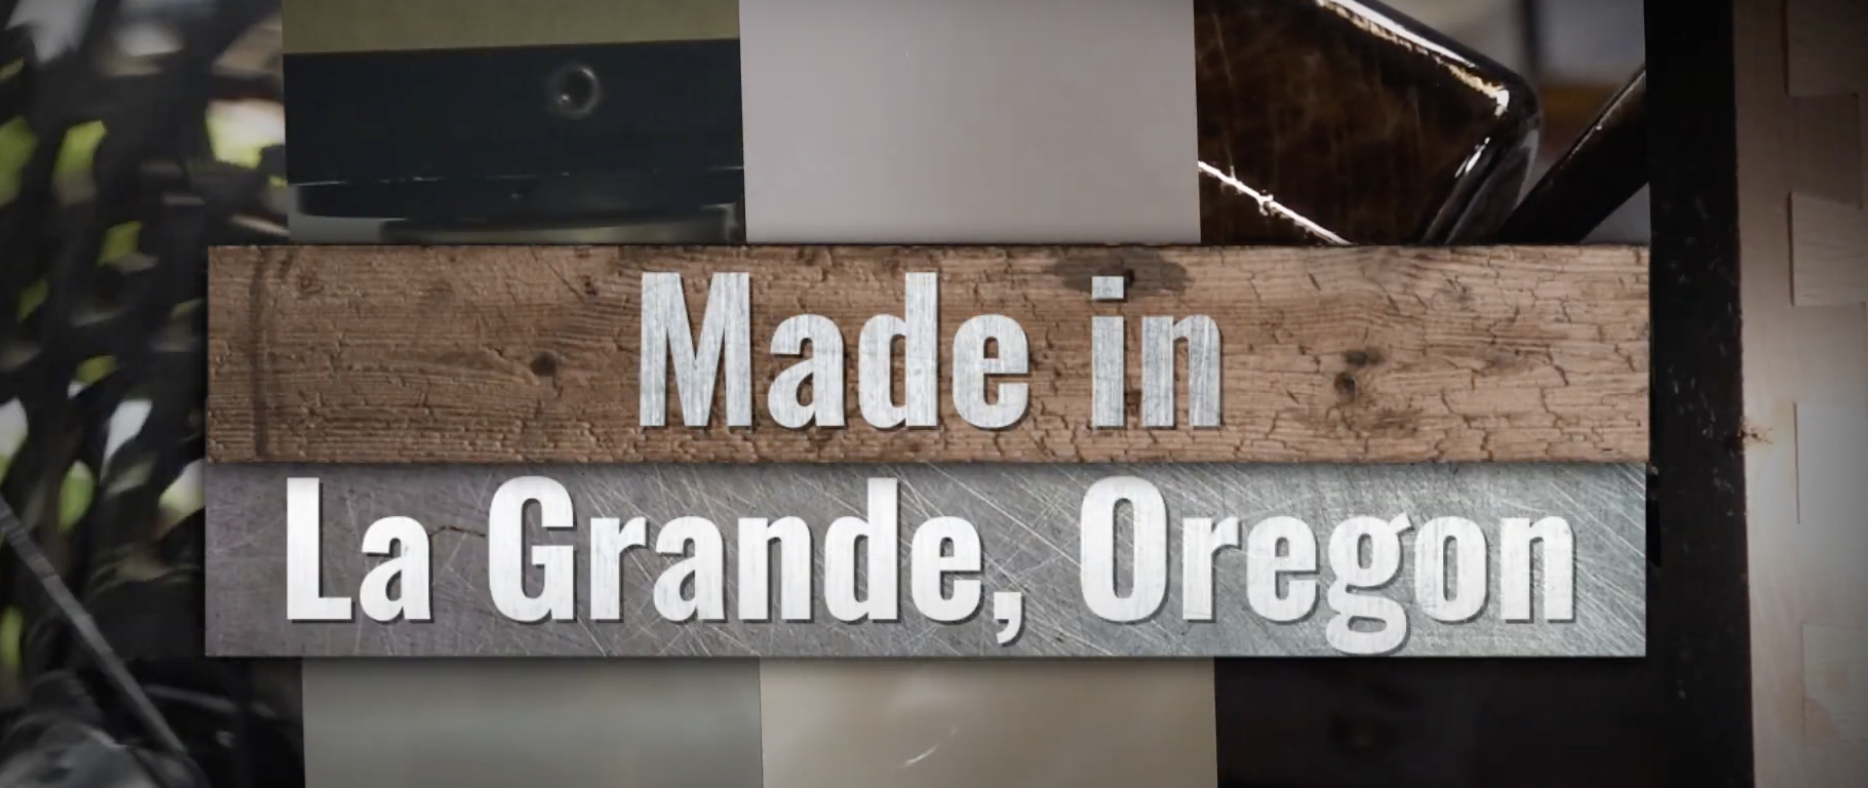 Thumbnail Image For Made in La Grande, Oregon: La Grande Economic Development